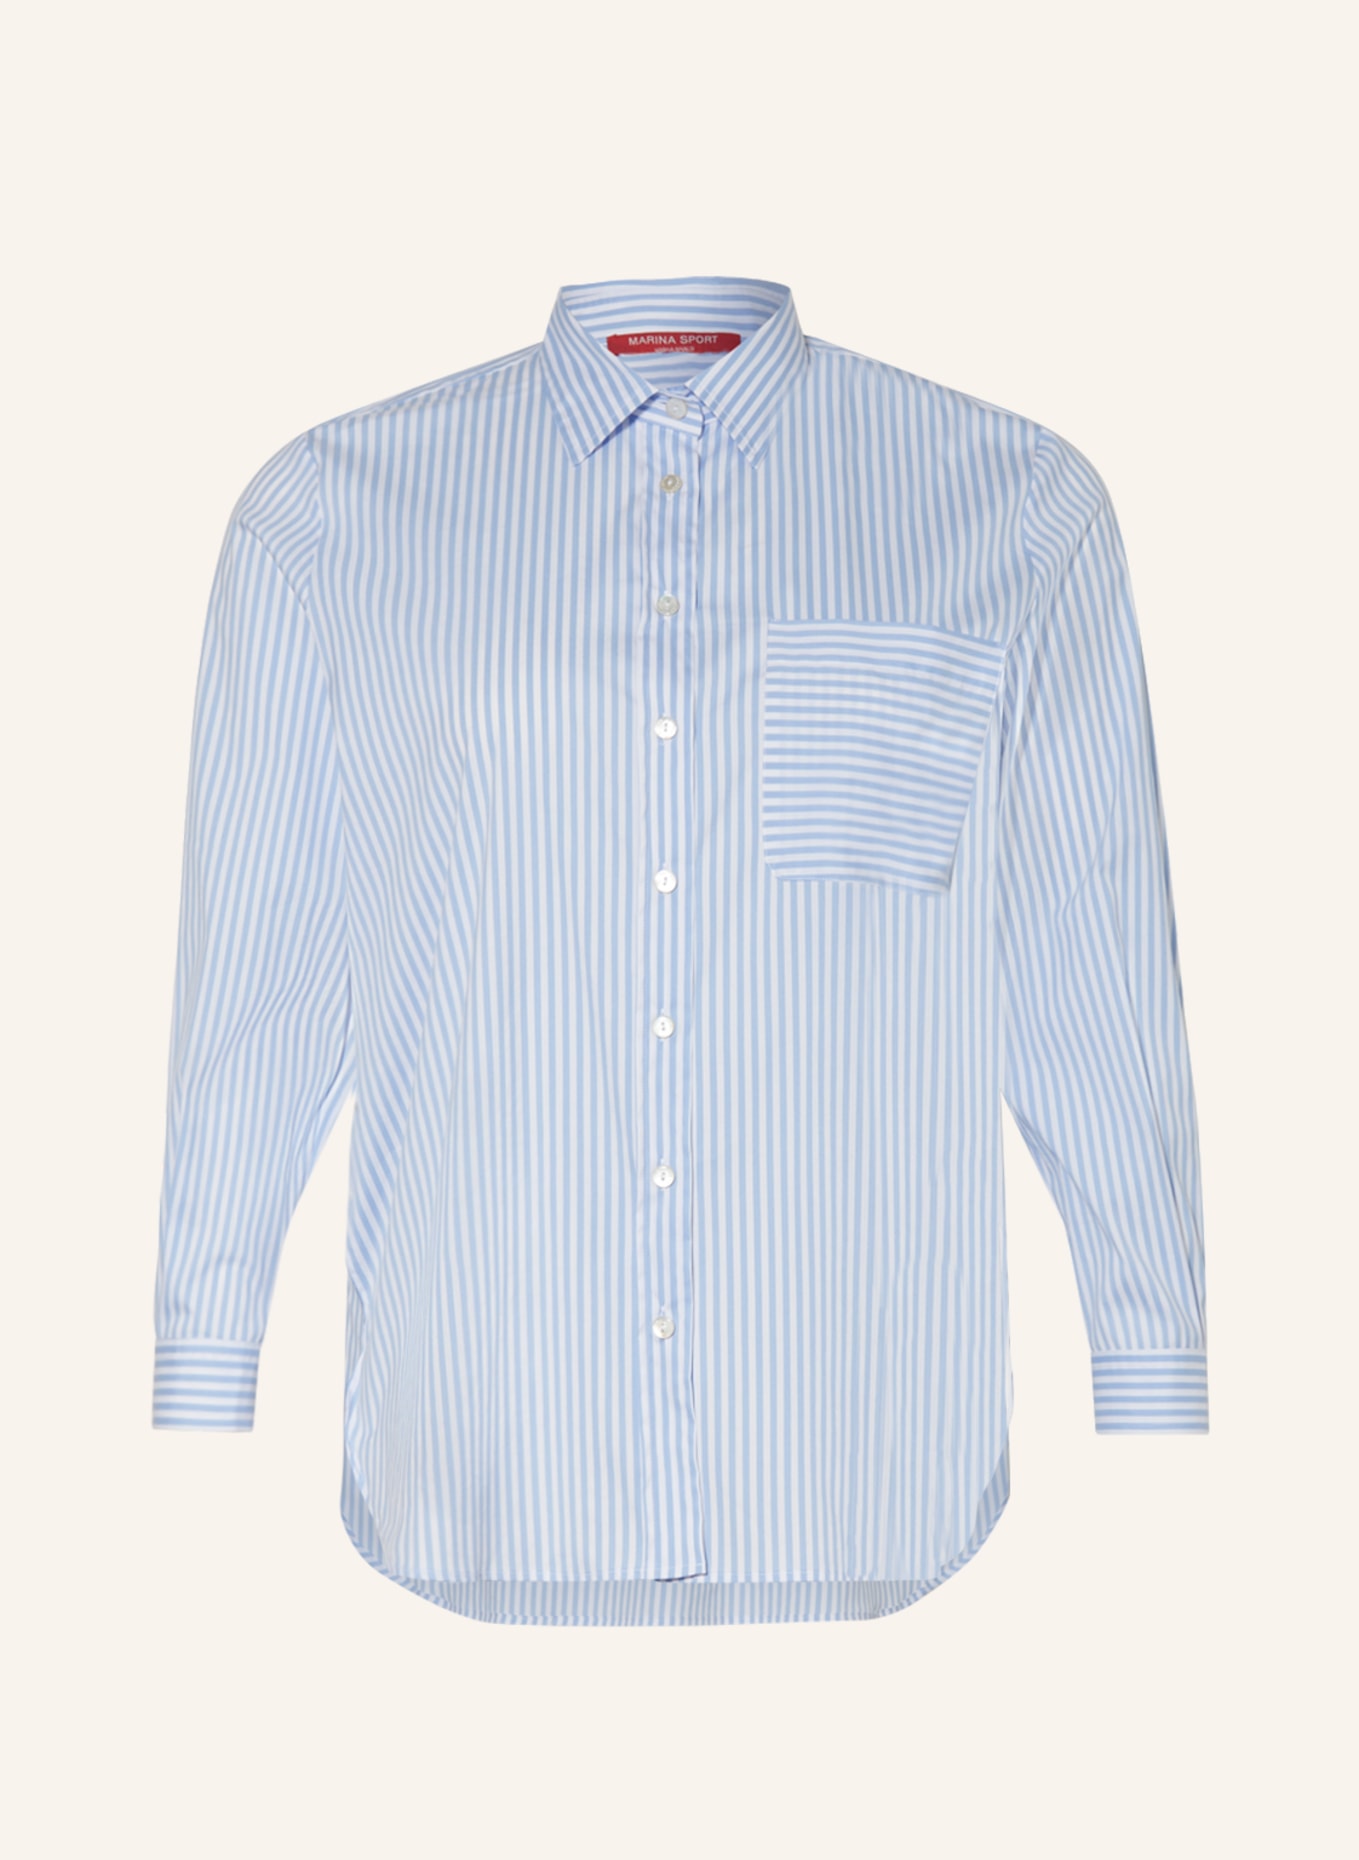 MARINA RINALDI SPORT Shirt blouse CITRATO, Color: WHITE/ LIGHT BLUE (Image 1)